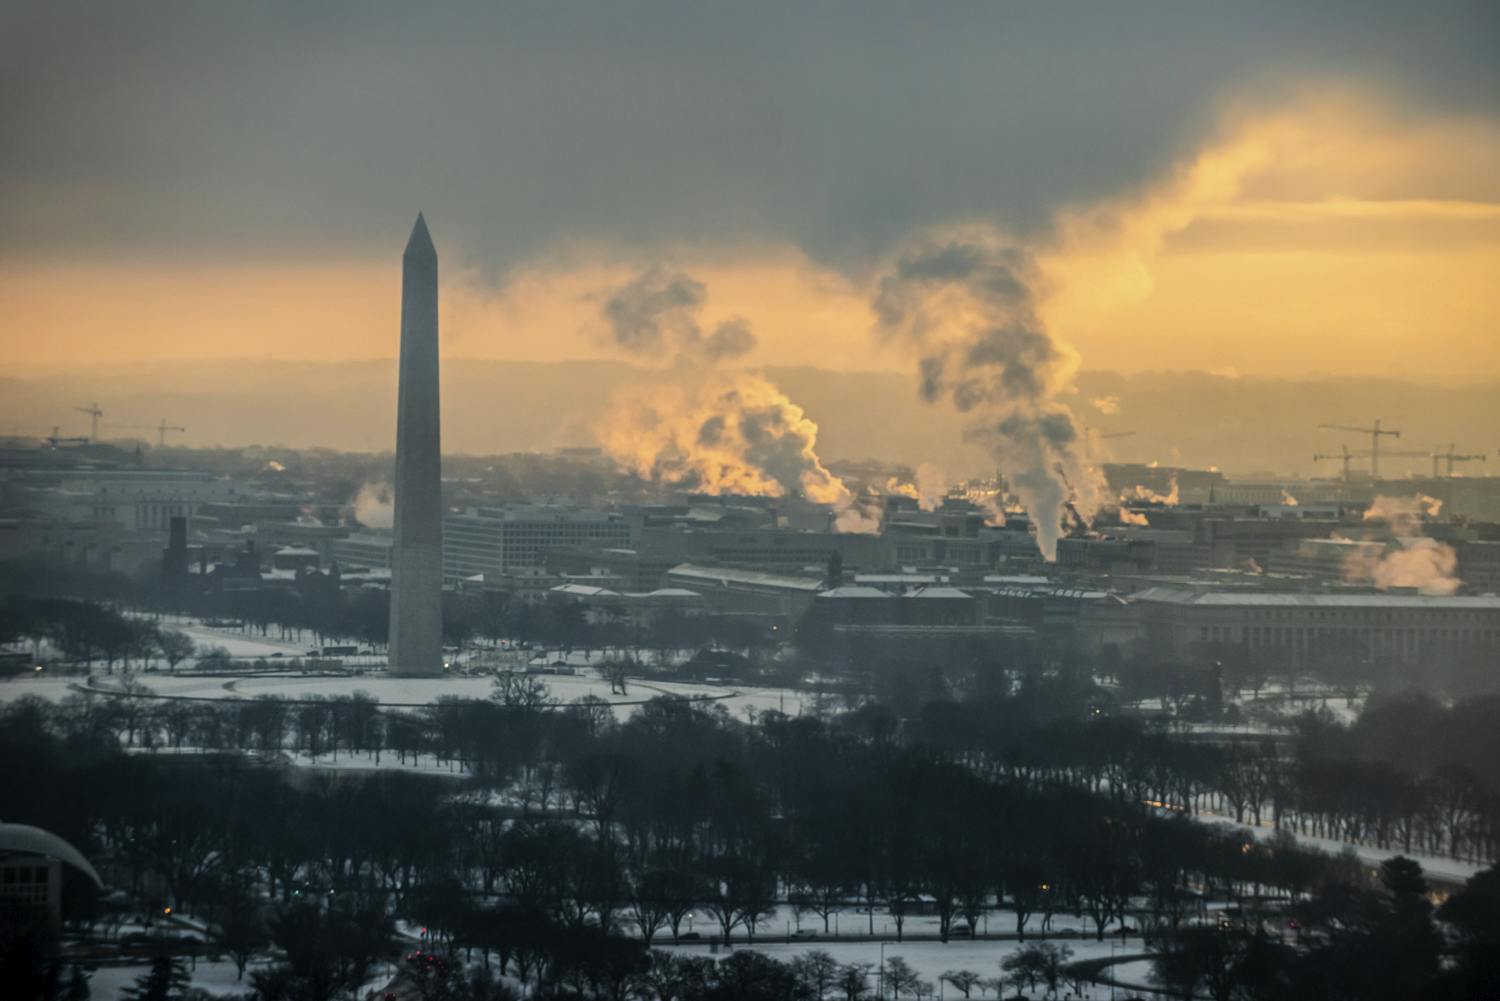 Sunrise view of the Washington Monument